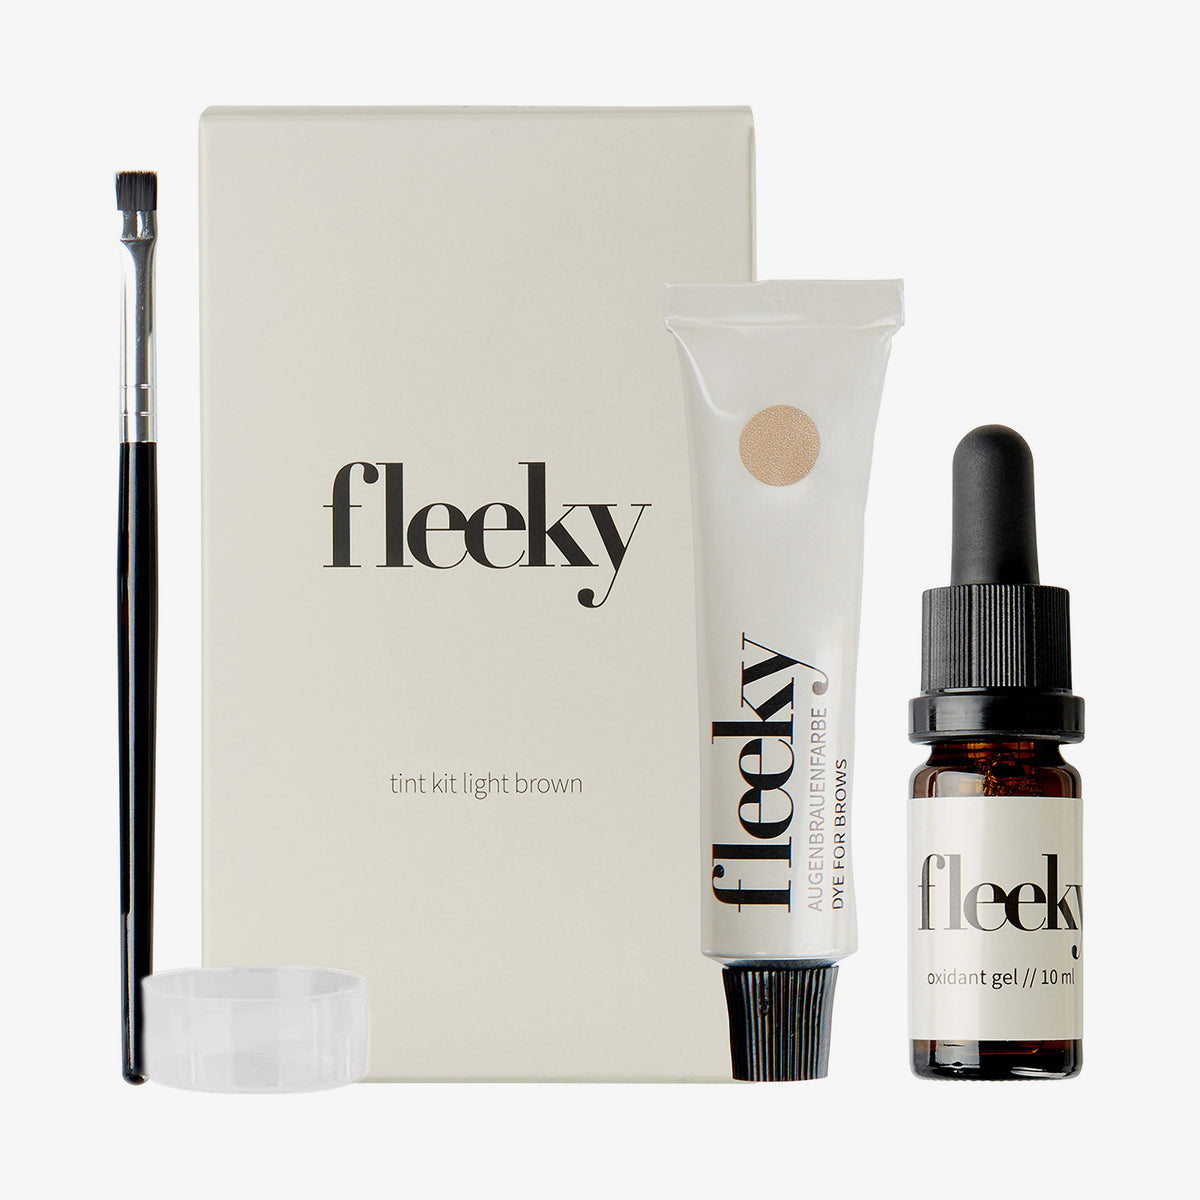 fleeky | Brow Tint Kit Light Brown